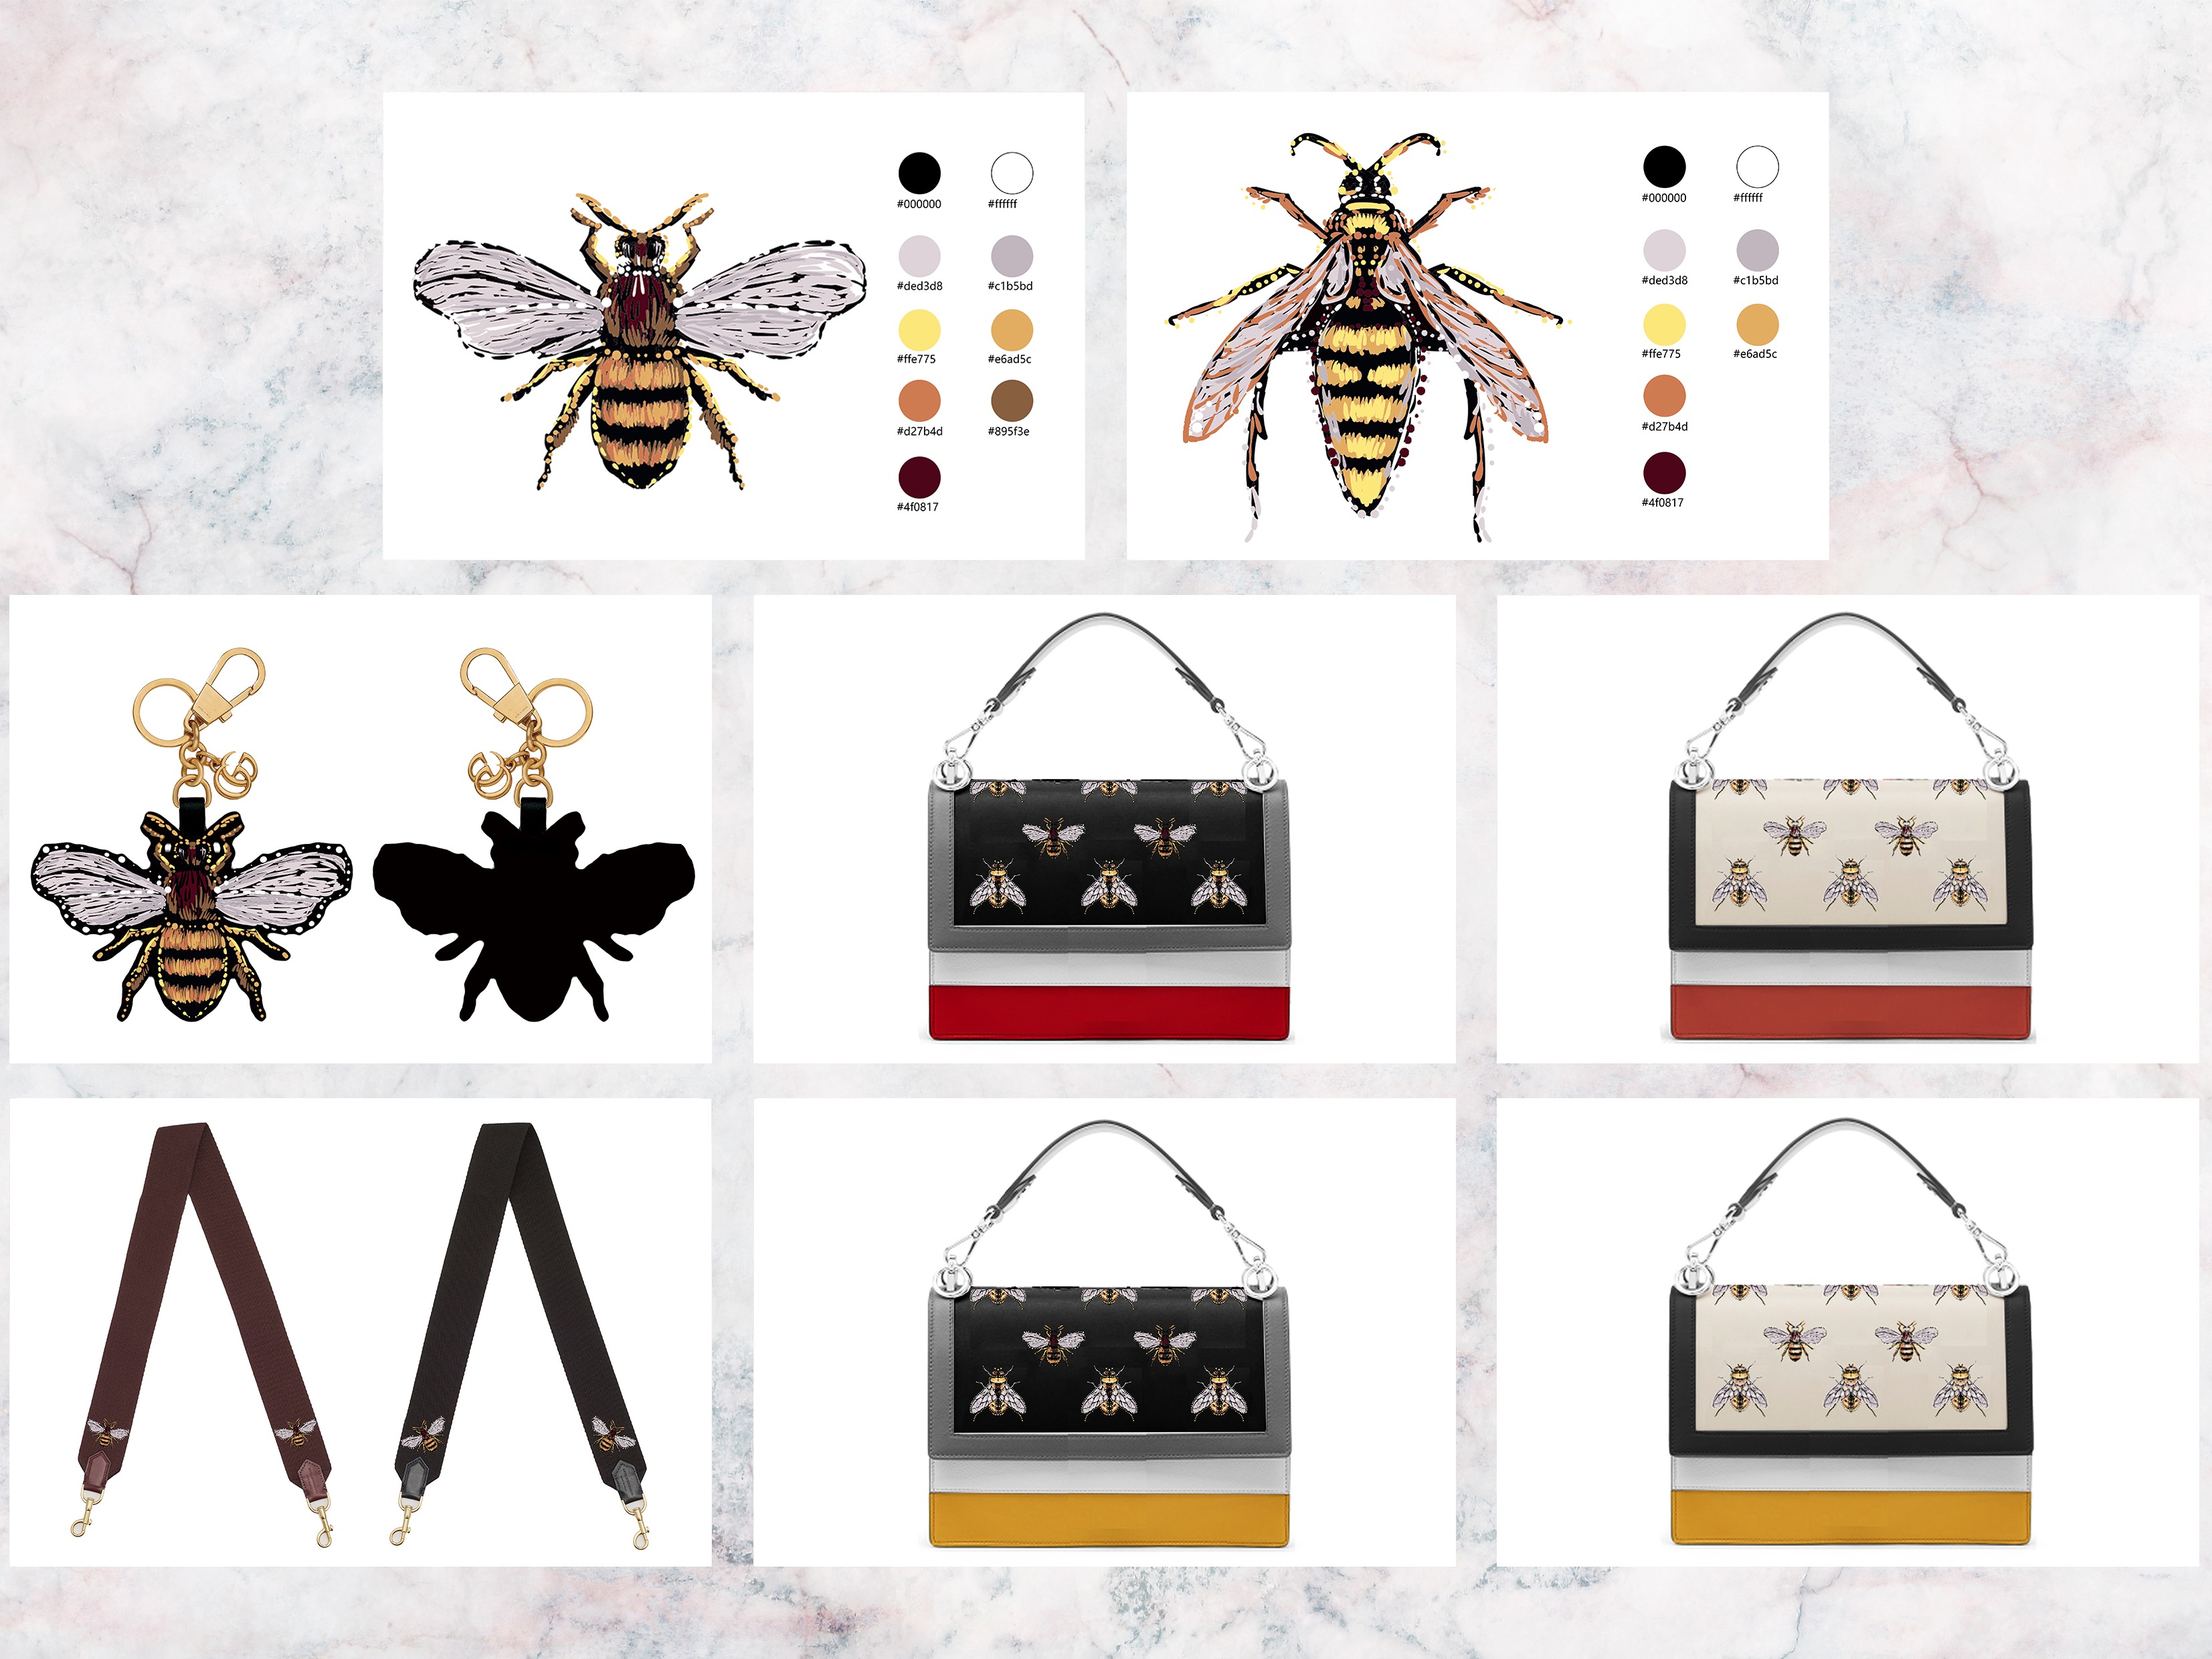 2017箱包手袋设计原创作品集合——蜜蜂系列